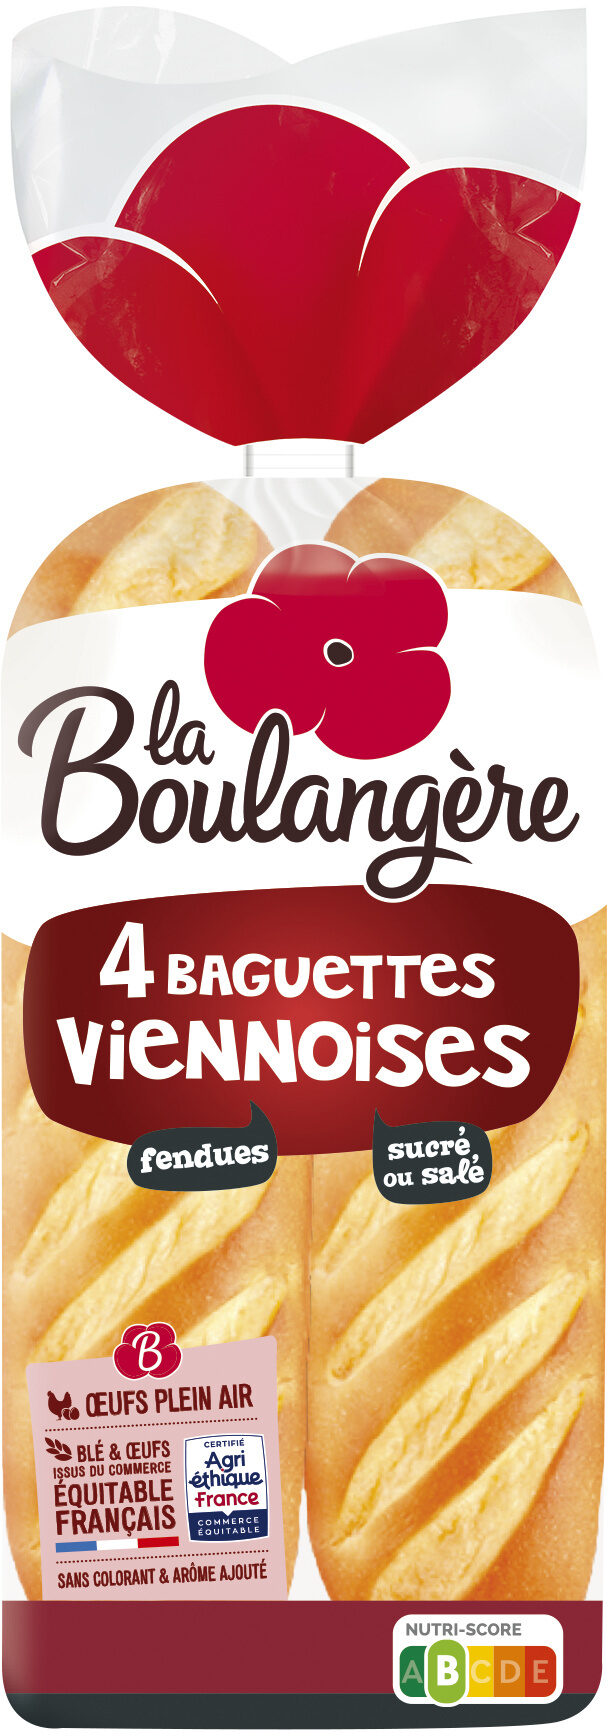 4 Baguettes viennoises 340g - Product - fr